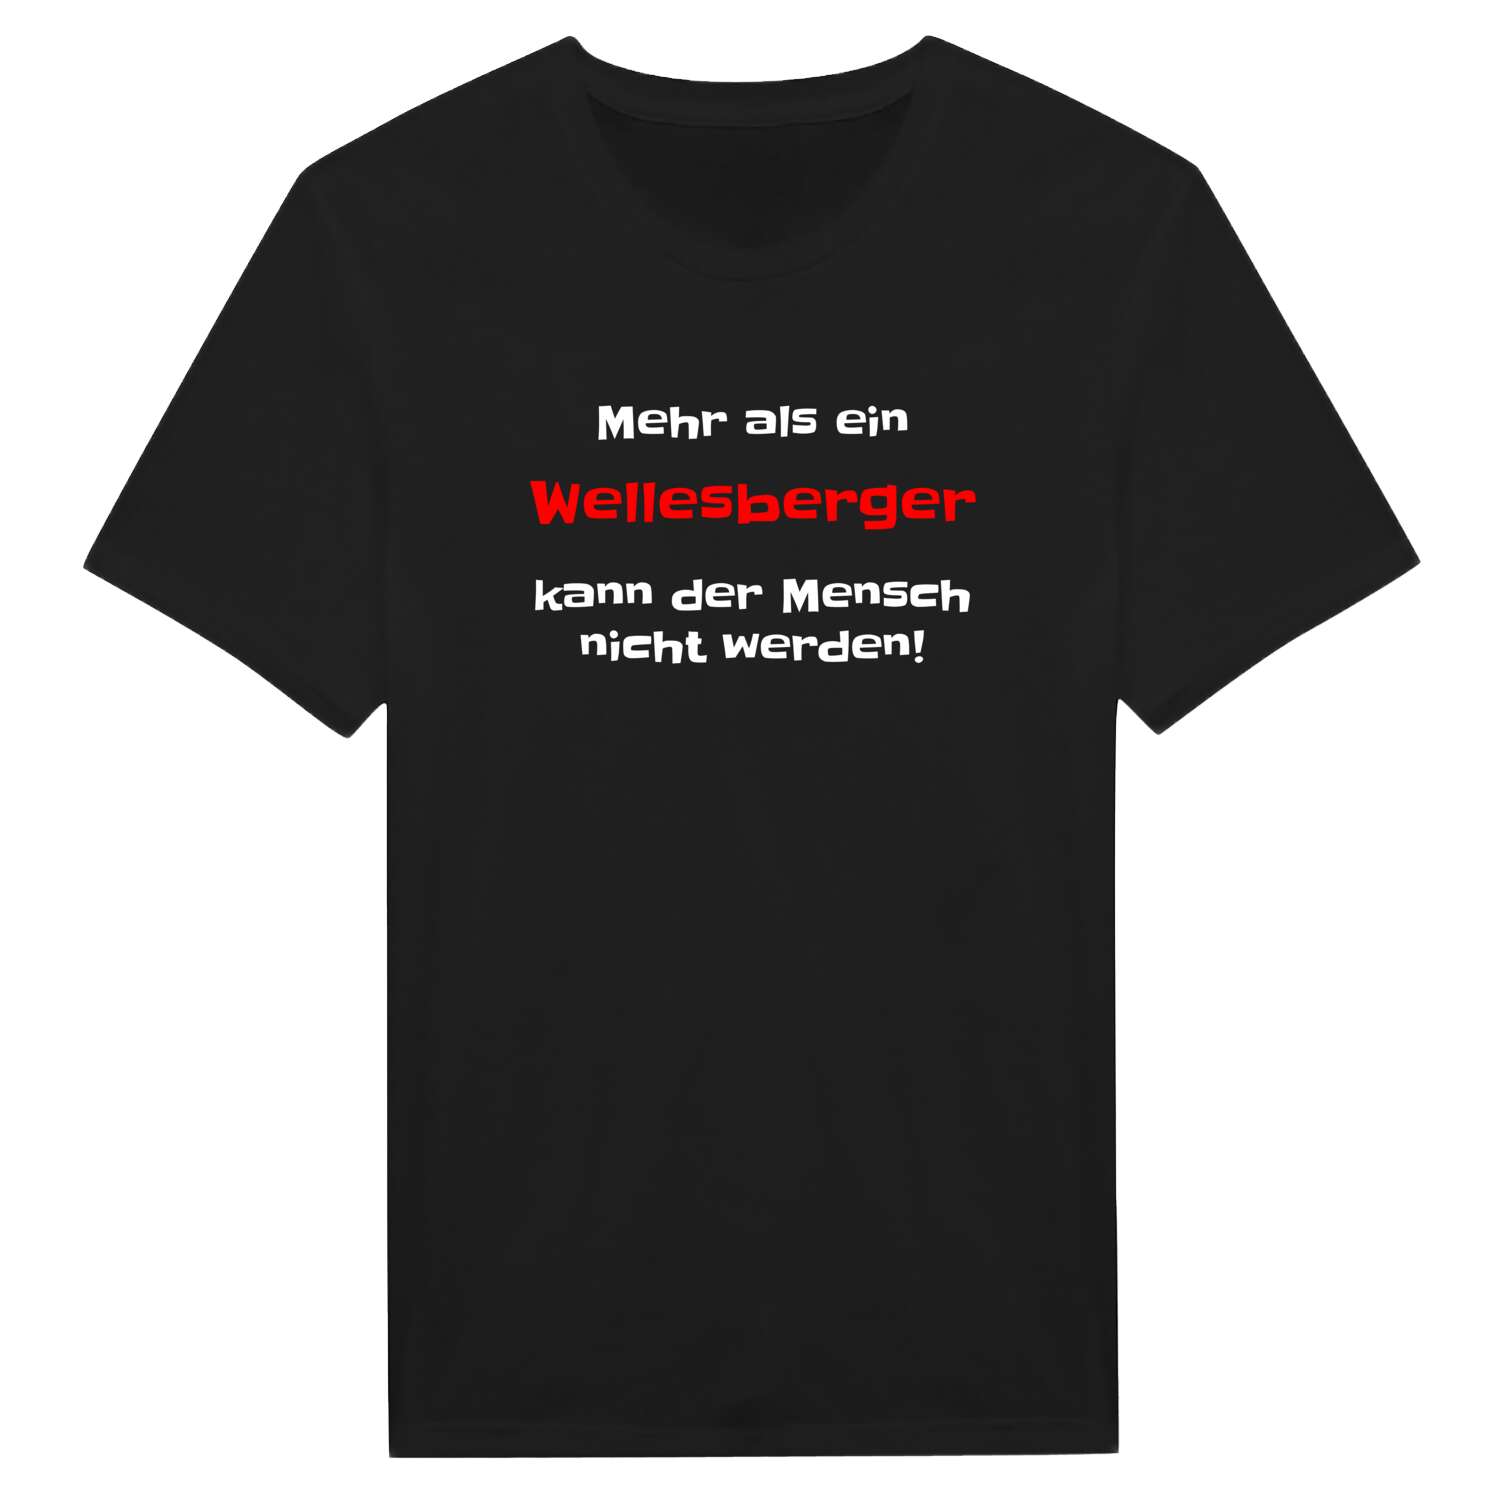 Wellesberg T-Shirt »Mehr als ein«